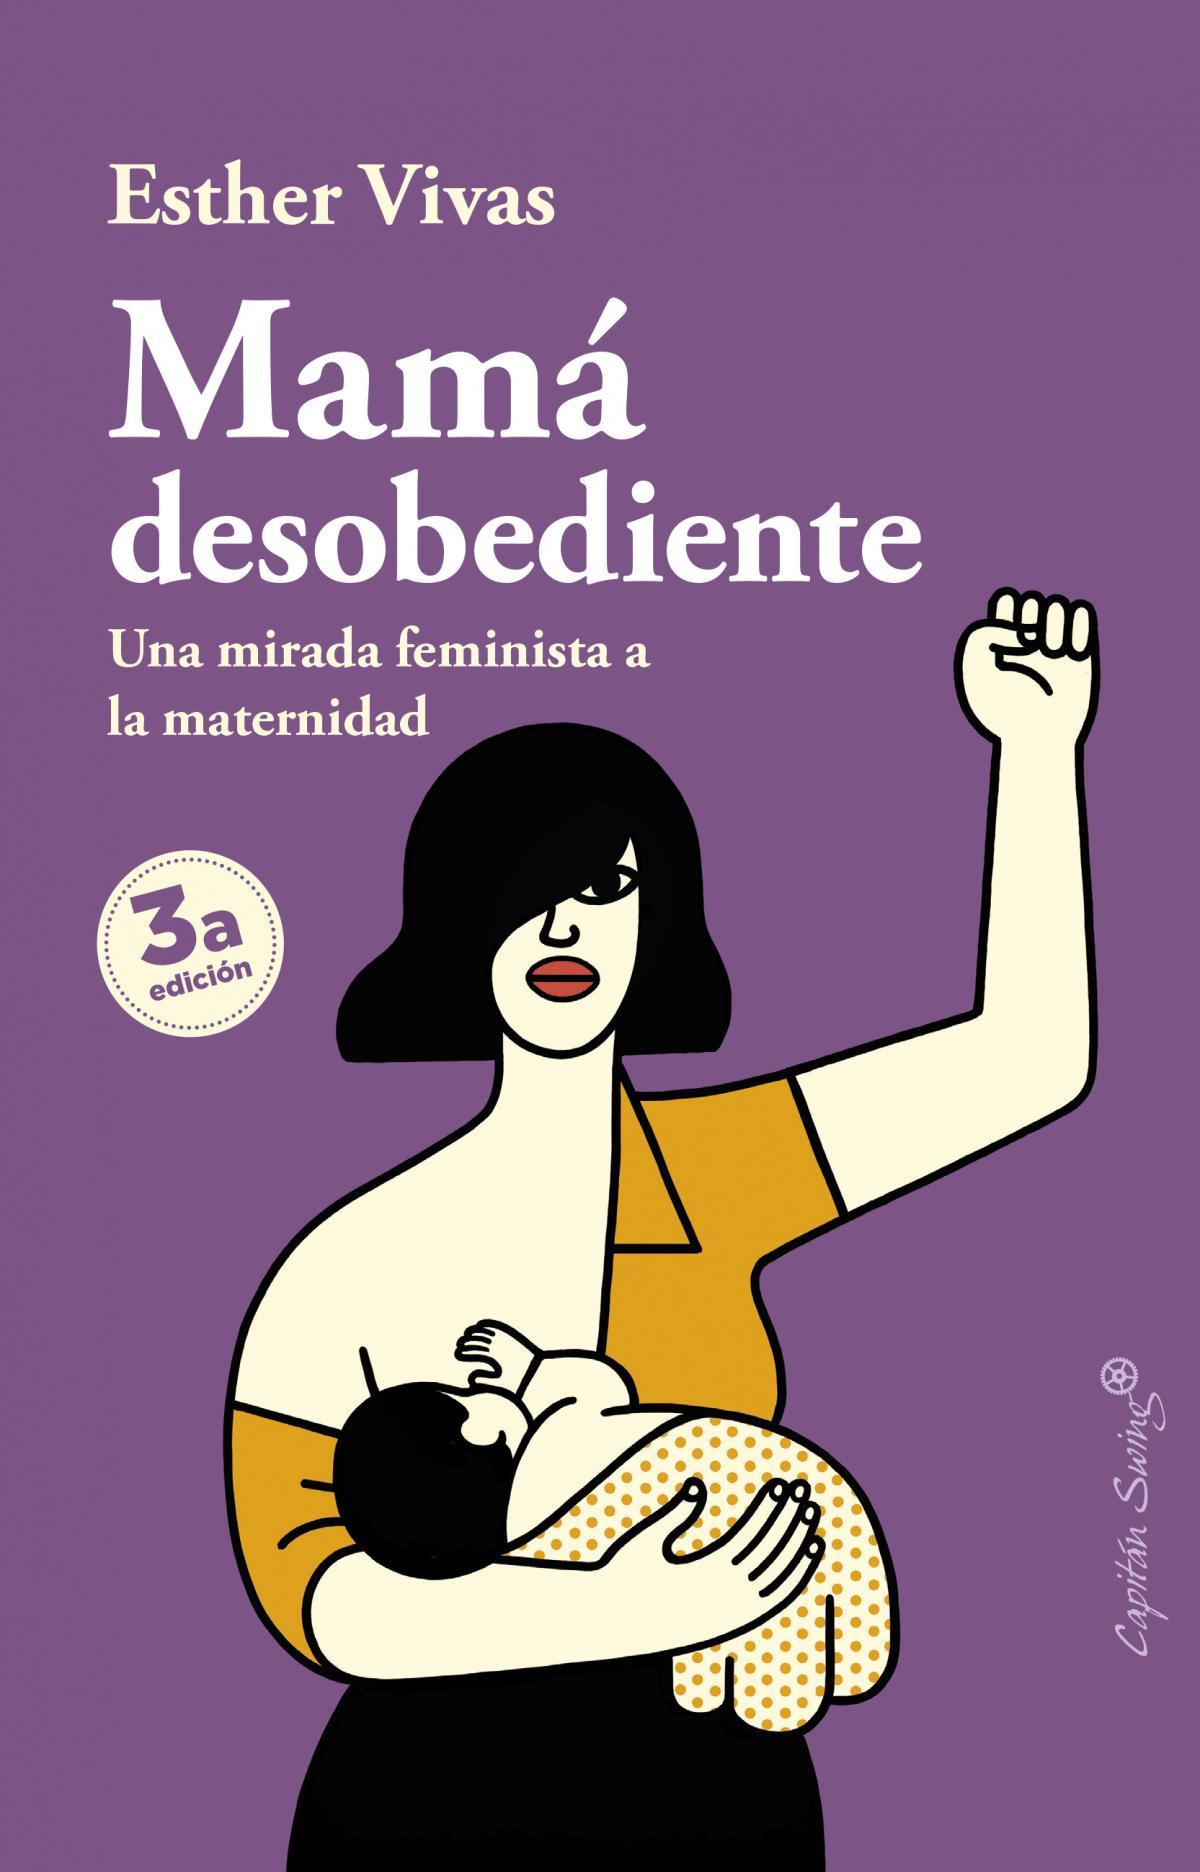 Portada del libro "Mamá desobediente", de Esther Vivas.